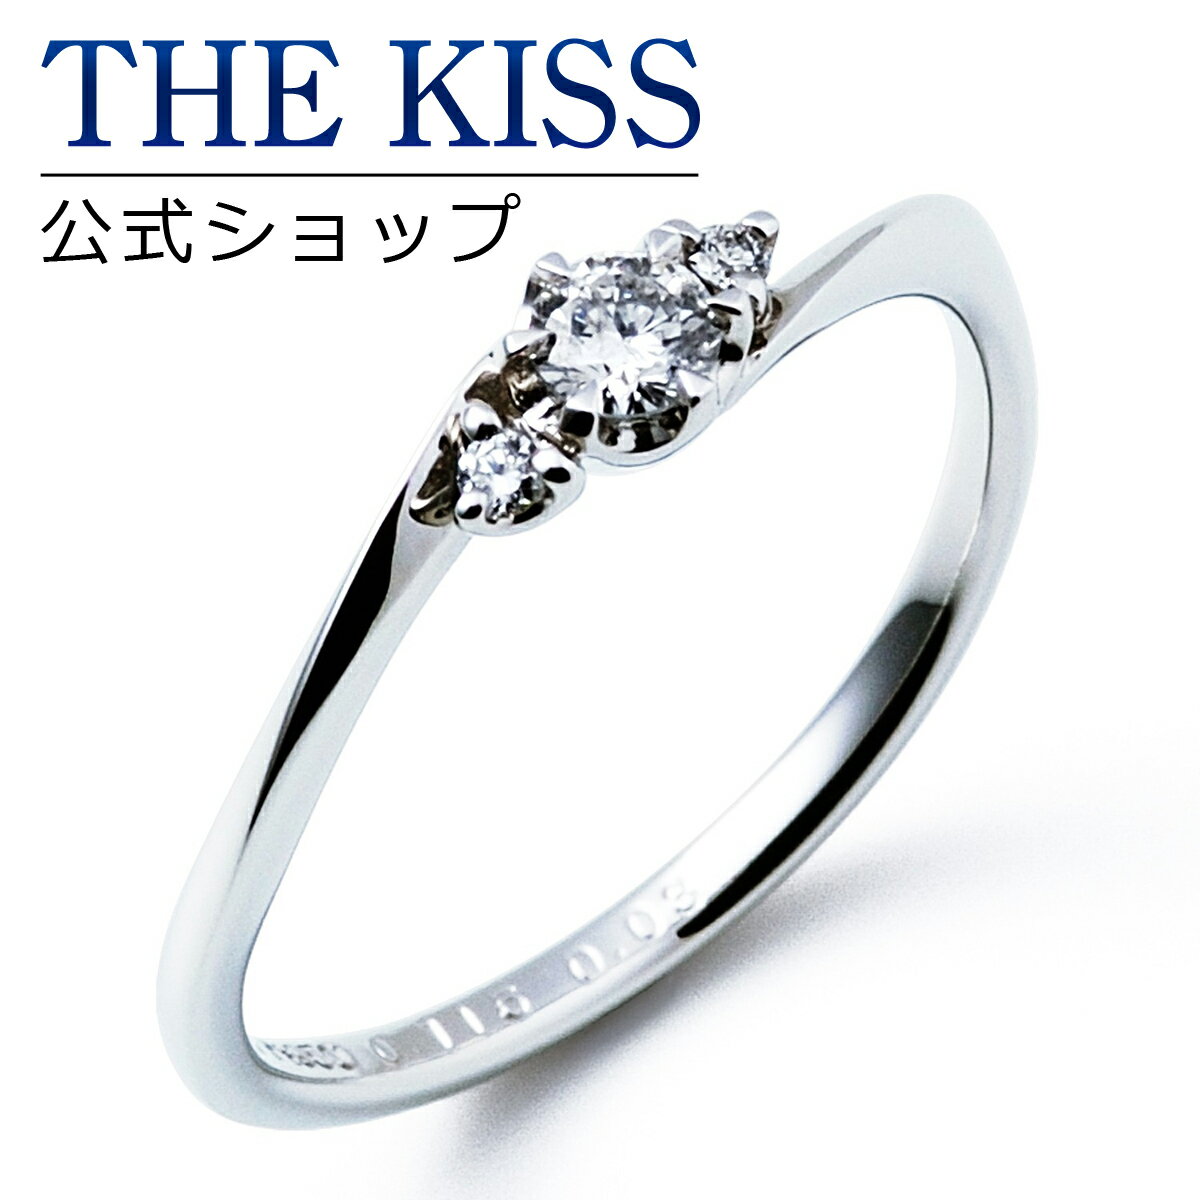 【ラッピング無料】【刻印無料】【THE KISS Anniversary】THE KISS 公式ショップ プラチナ エンゲージリング 婚約指輪 結婚指輪 ブライダルリング プロポーズ THE KISS ザキッス 指輪 6061109120 シンプル 母の日 鑑定書付 ダイヤモンド【0.20ct F VS2 EX】